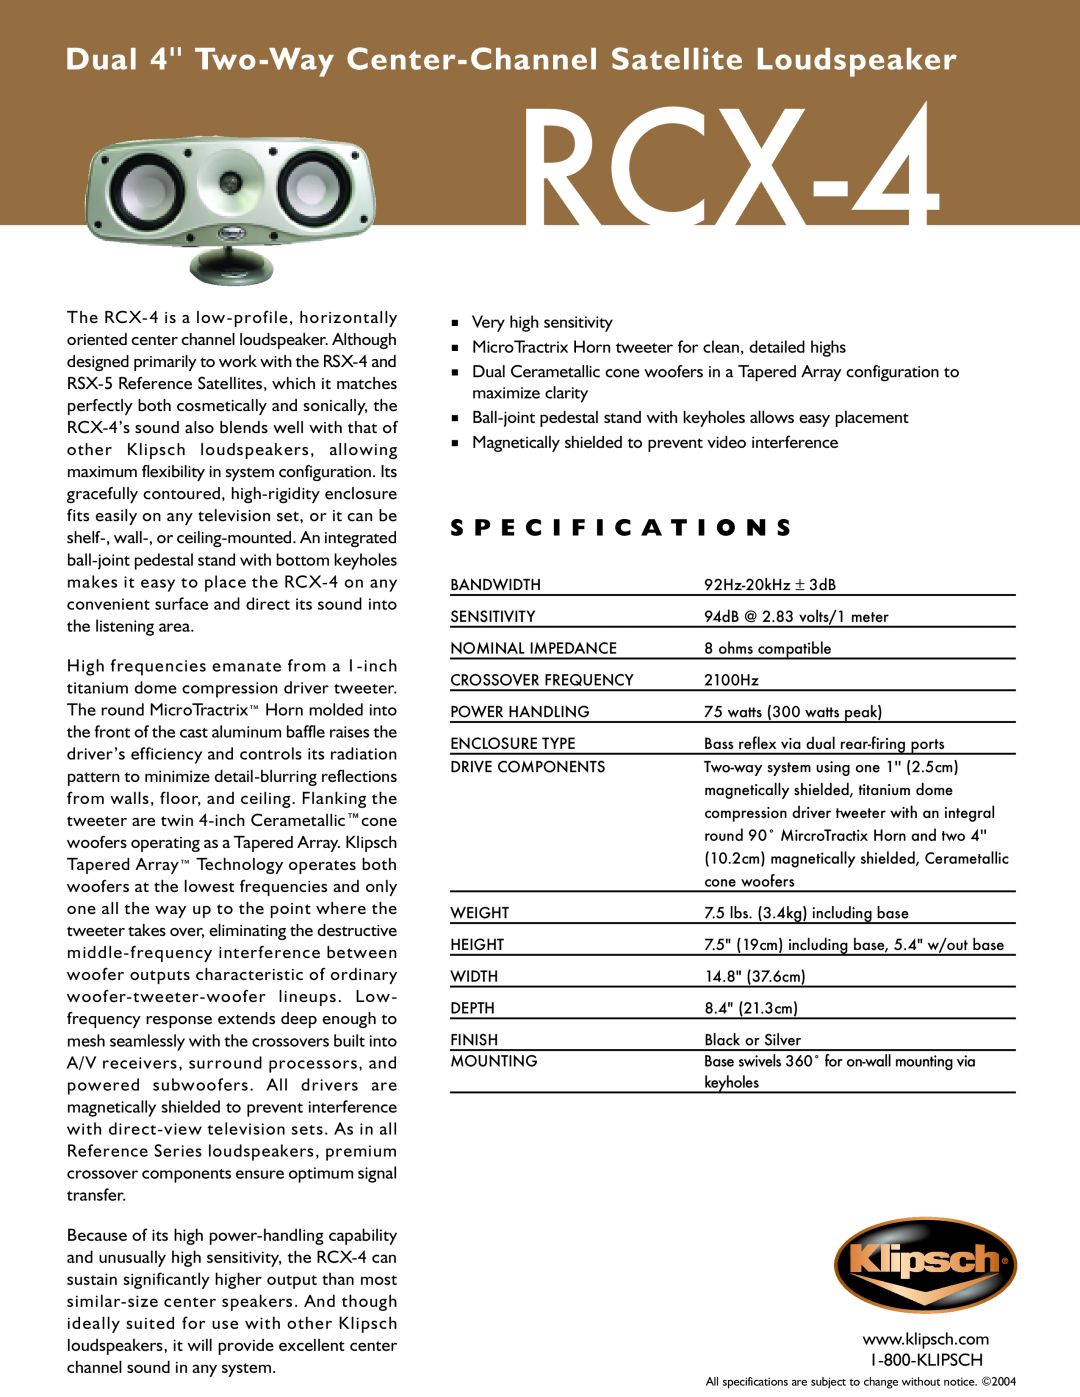 Klipsch RCX-4 specifications S P E C I F I C A T I O N S 